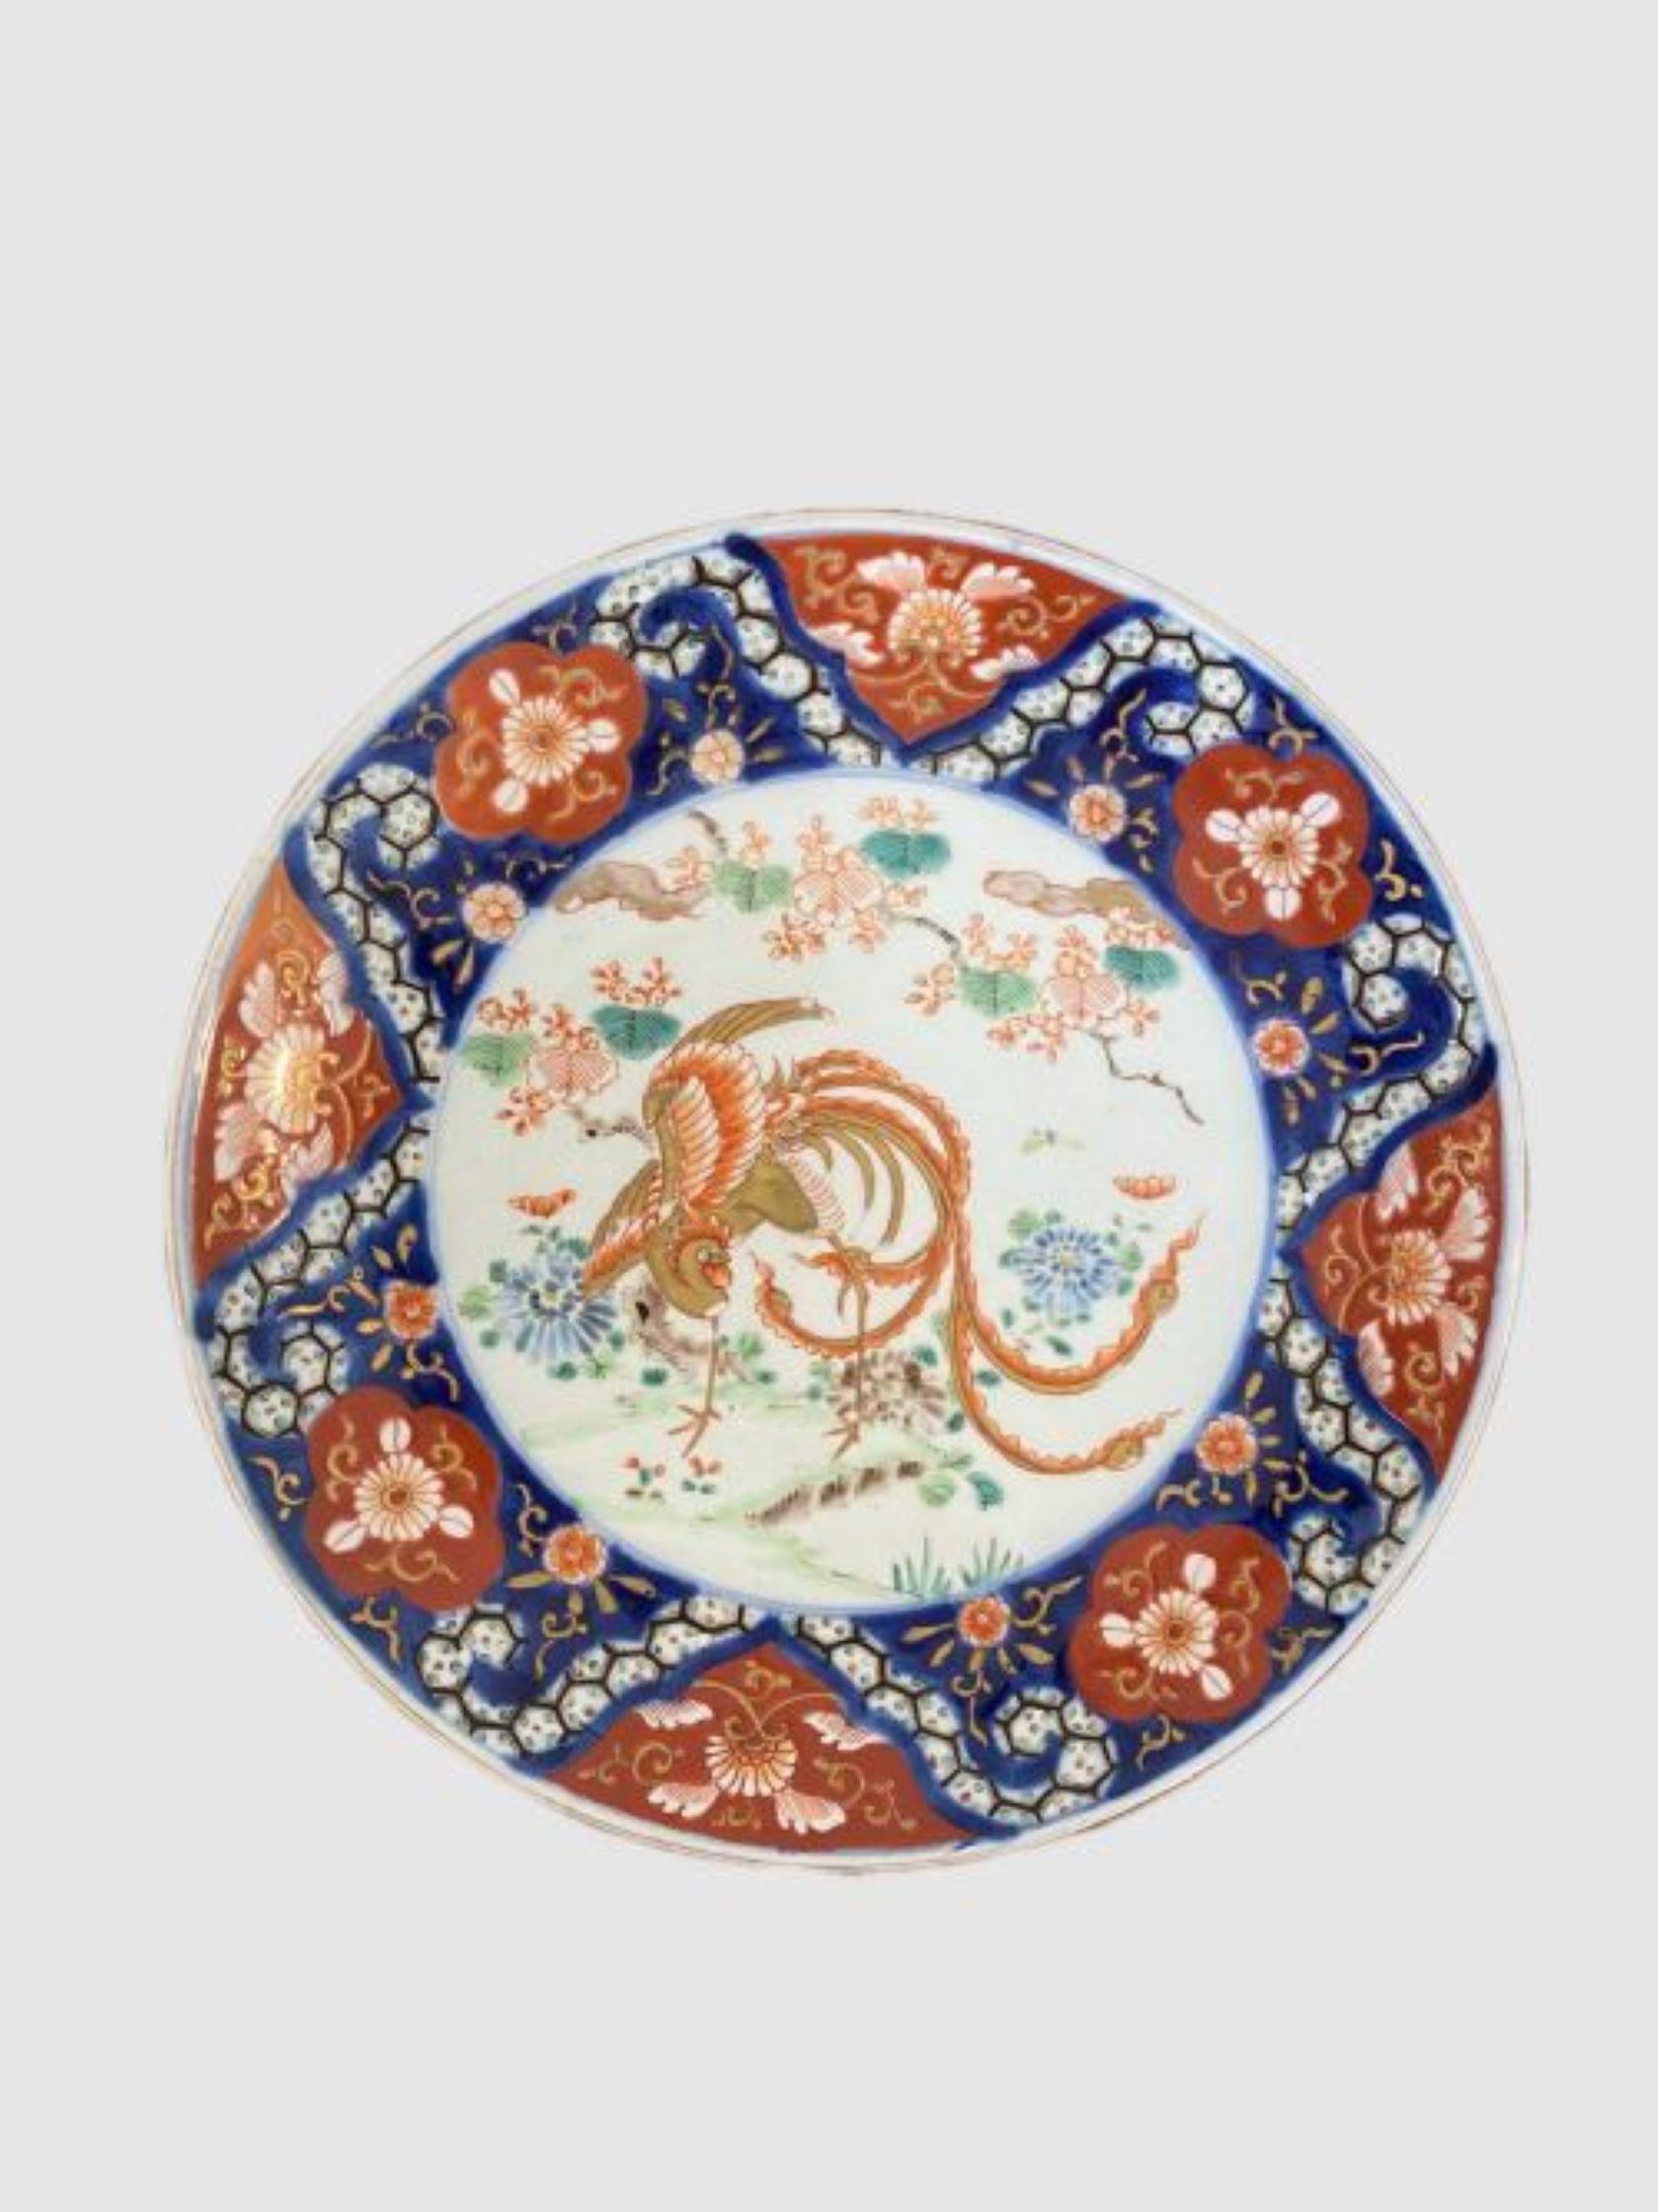 Hochwertiger antiker japanischer Imari-Teller, der mit Blumen, Blättern, Bäumen und einem ungewöhnlich großen, verzierten Vogel in der Mitte in wunderschönen roten, blauen, grünen, weißen und goldenen Farben handbemalt ist.